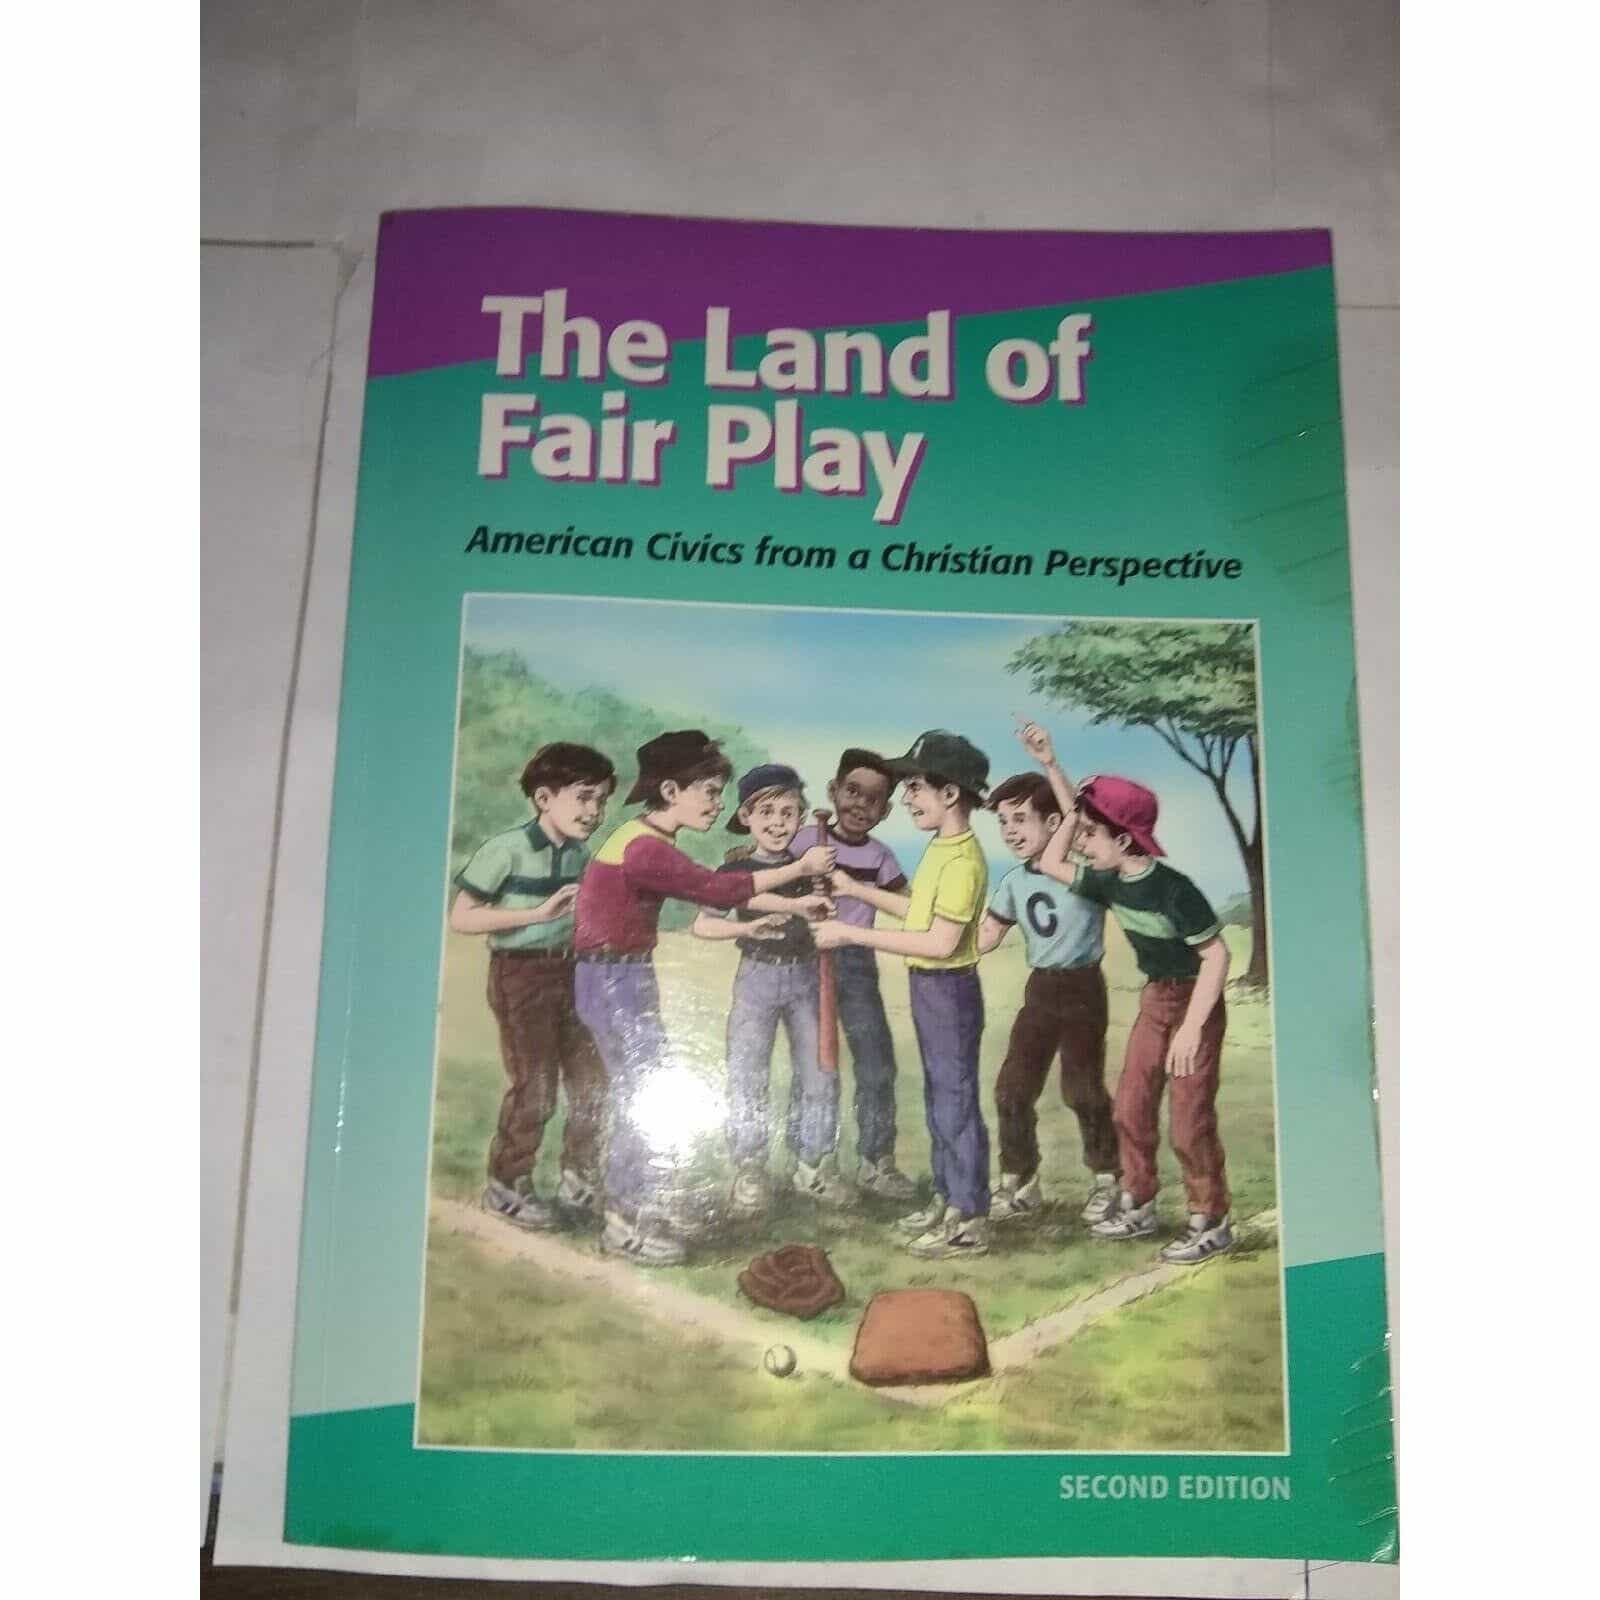 The Land of Fair Play (Christian Civics)